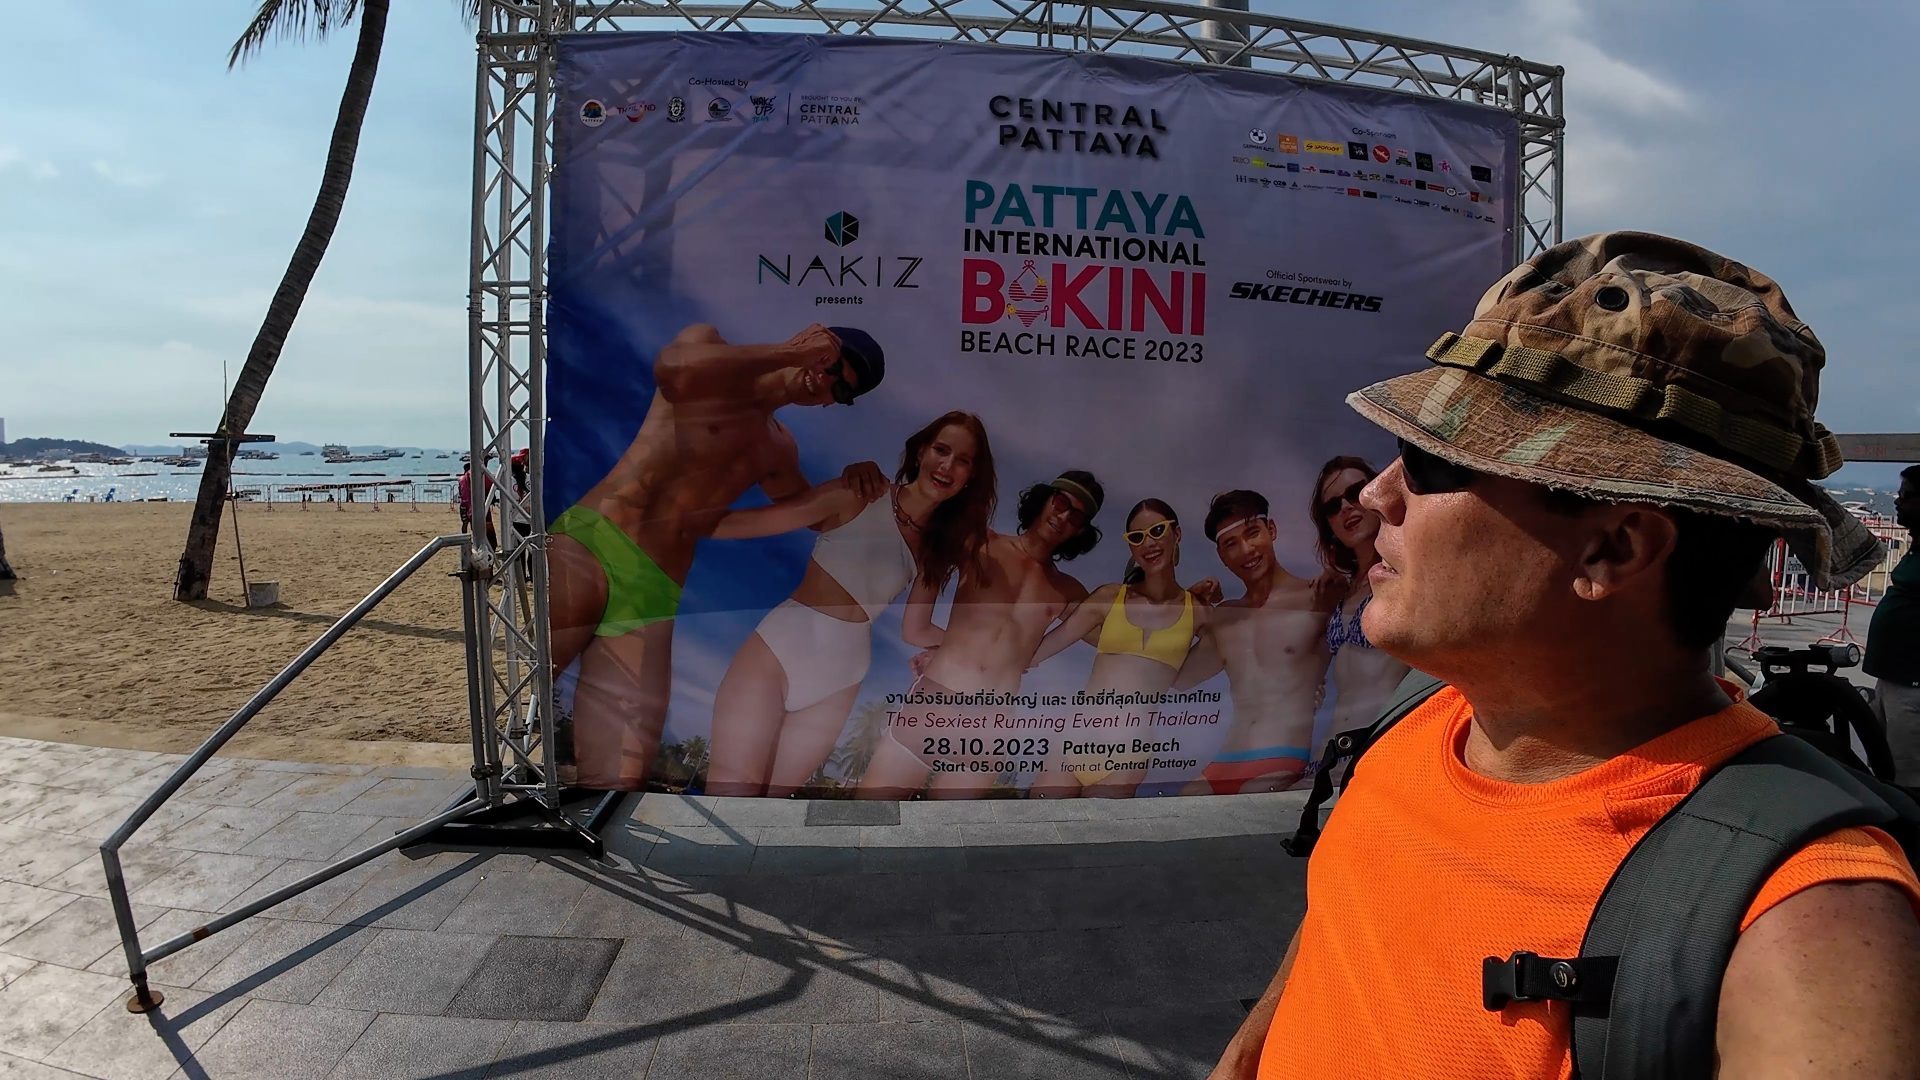 Thailand Lifestyle Bikini Race on the Beach